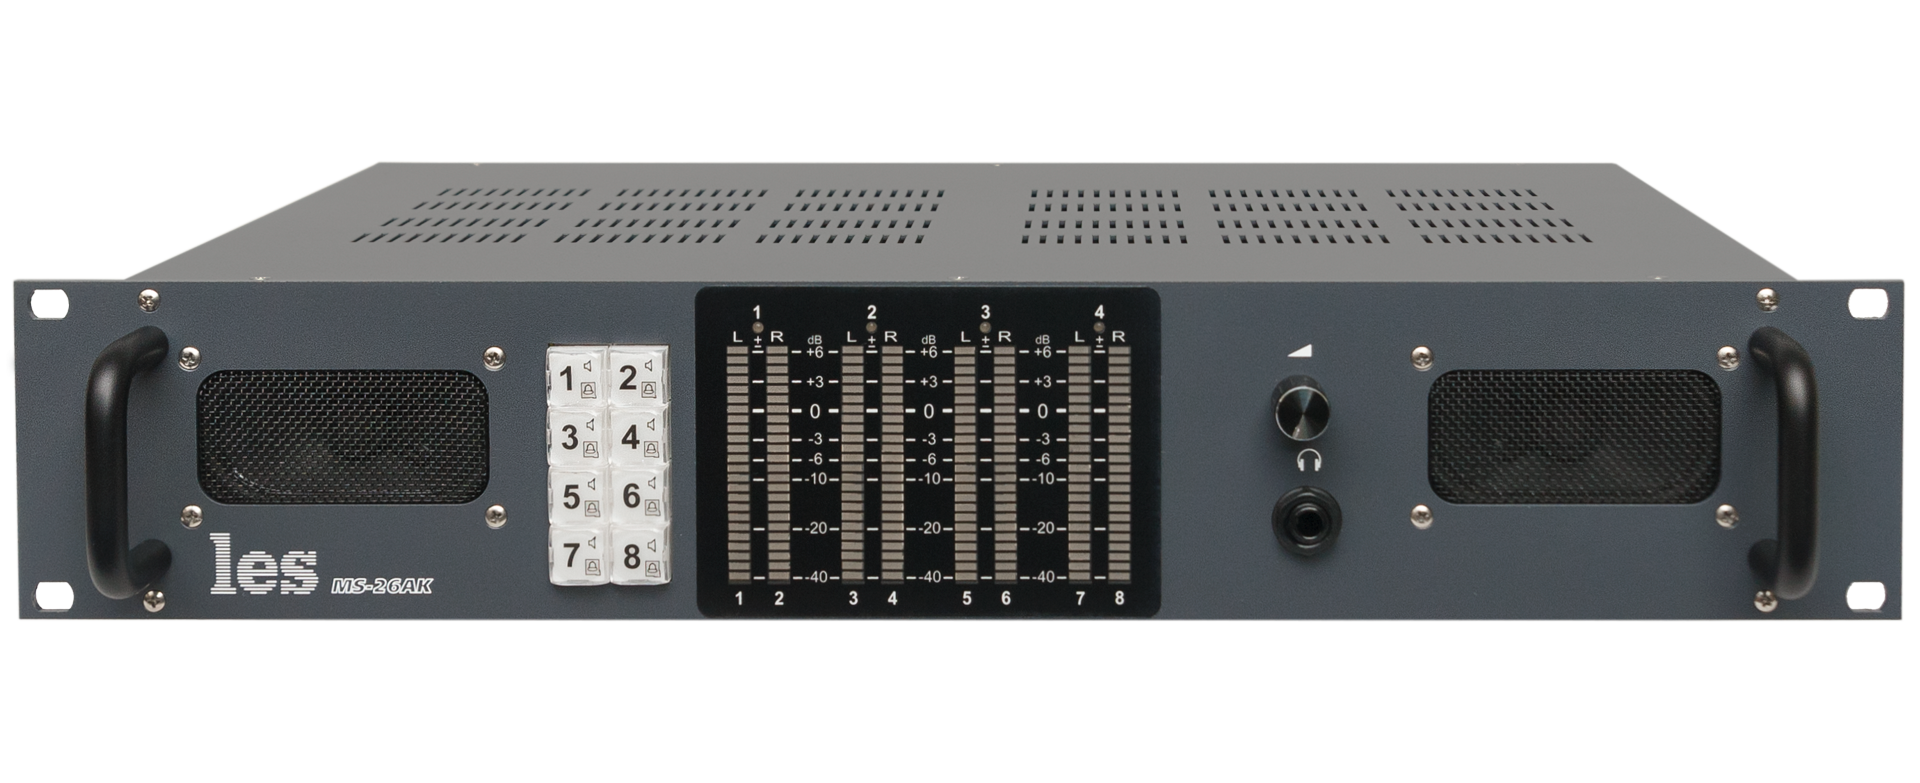 MS-26AK 8 канальный измеритель уровня звука Les